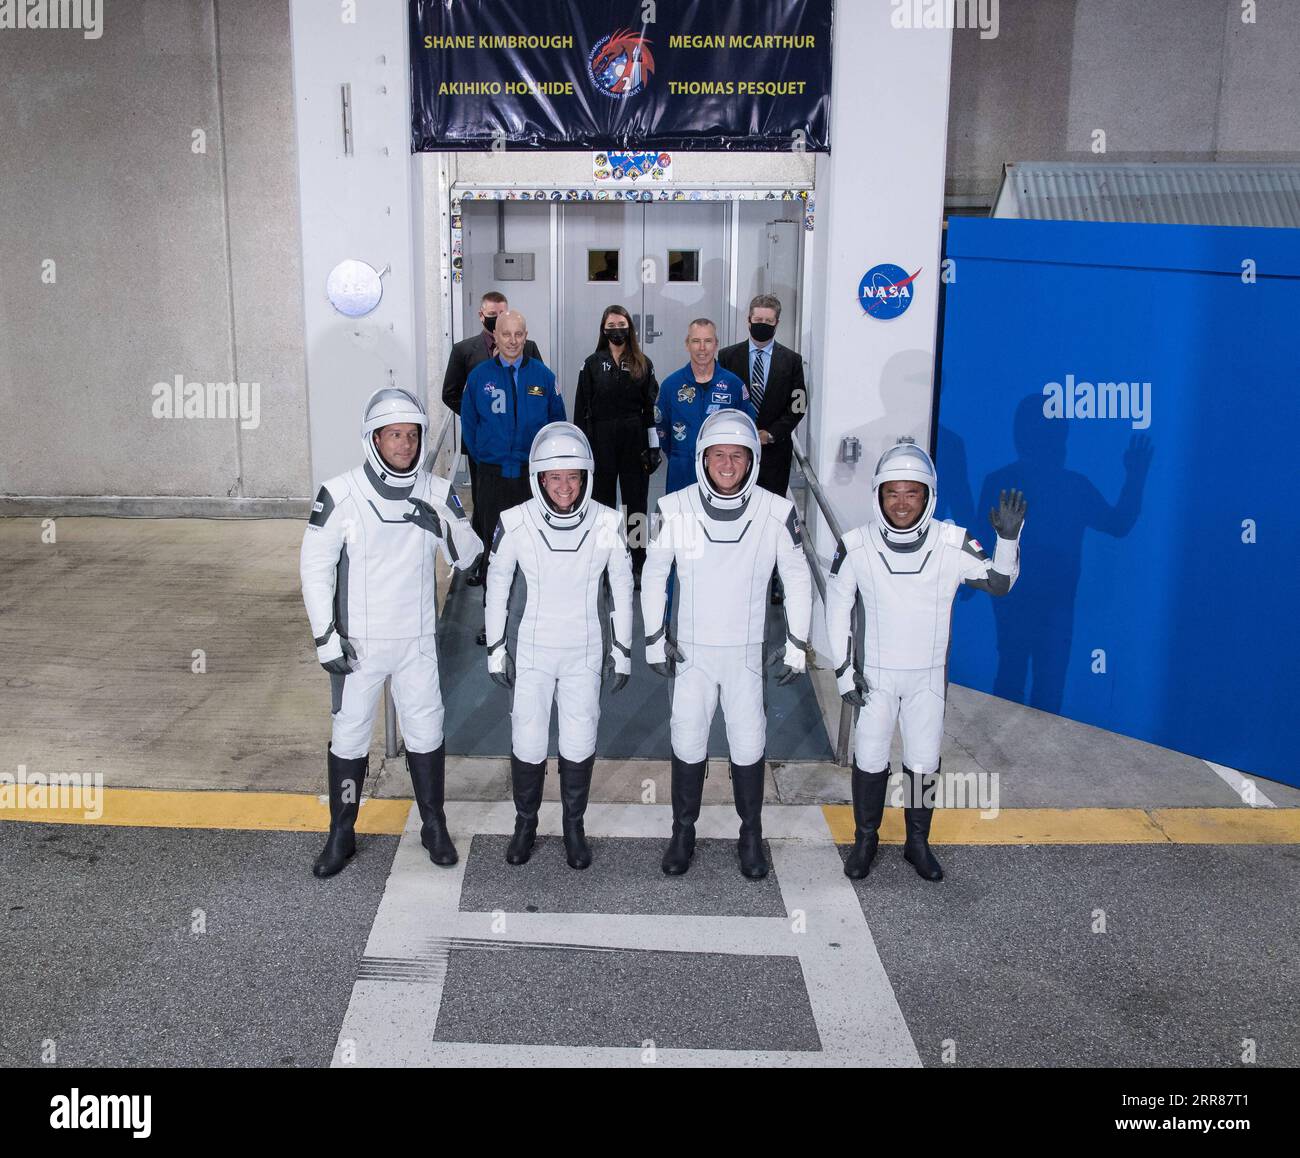 210423 -- WASHINGTON, D.C., 23. April 2021 -- Astronauten posieren für ein Gruppenfoto, bevor sie an Bord der Crew Dragon im Kennedy Space Center in Cape Canaveral in Florida, USA, gehen, 23. April 2021. Und SpaceX startete vier Astronauten am frühen Freitag zur Internationalen Raumstation ISS, der dritten bemannten Mission der US-amerikanischen kommerziellen Raketenfirma in weniger als einem Jahr. Die Crew Dragon mit vier Astronauten aus drei Ländern hat die Umlaufbahn einige Minuten nach dem Start vom Kennedy Space Center, Florida, um 5:49 Uhr Eastern Daylight Time 0949 sicher erreicht Stockfoto